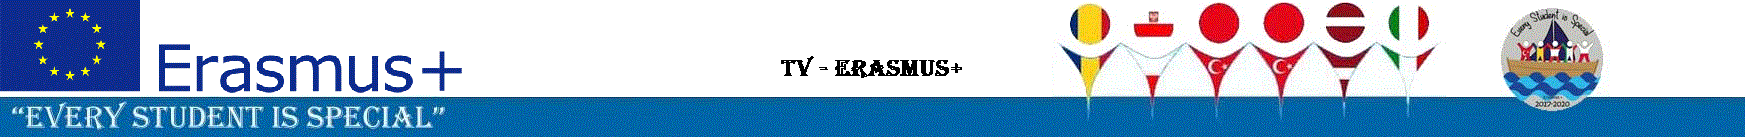 TV - Erasmus+